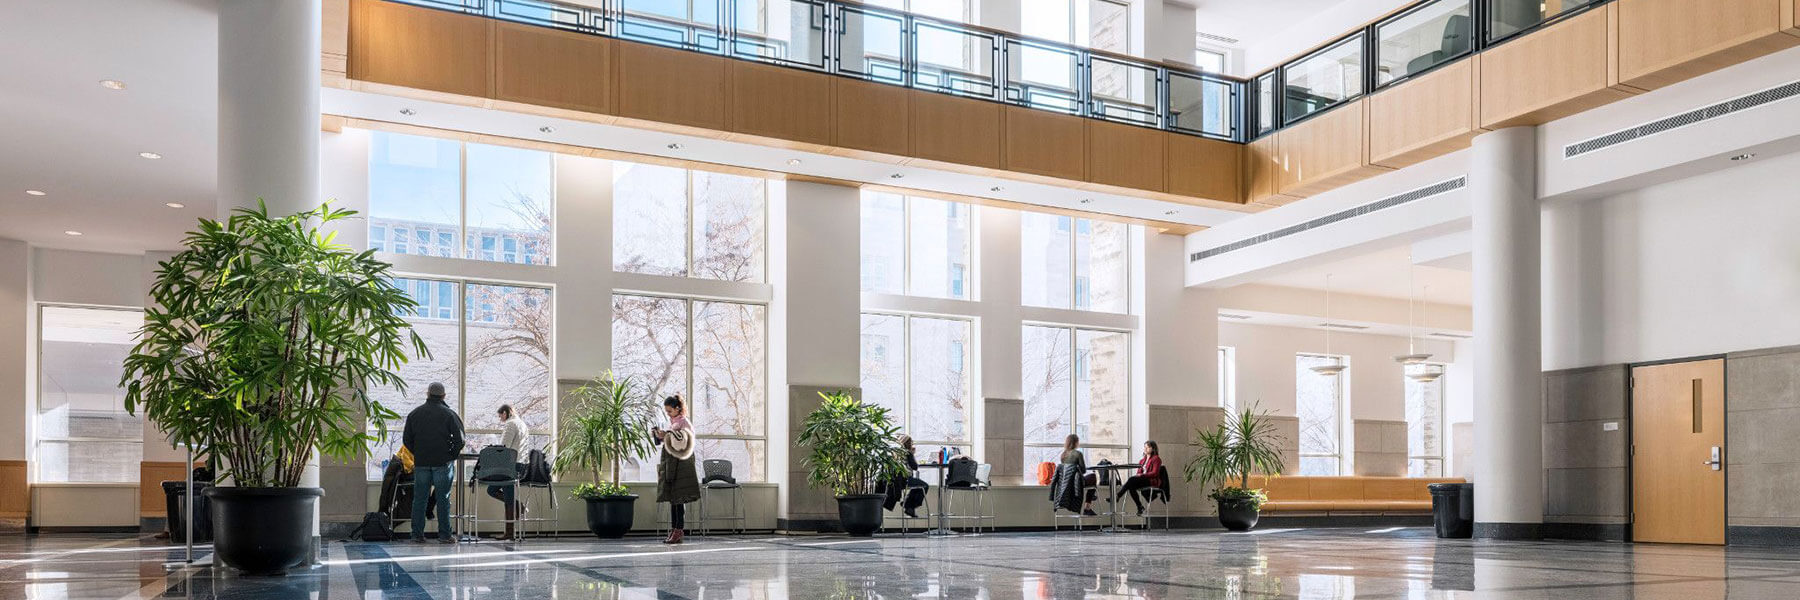 Godfrey Graduate and Executive Education Center interior atrium